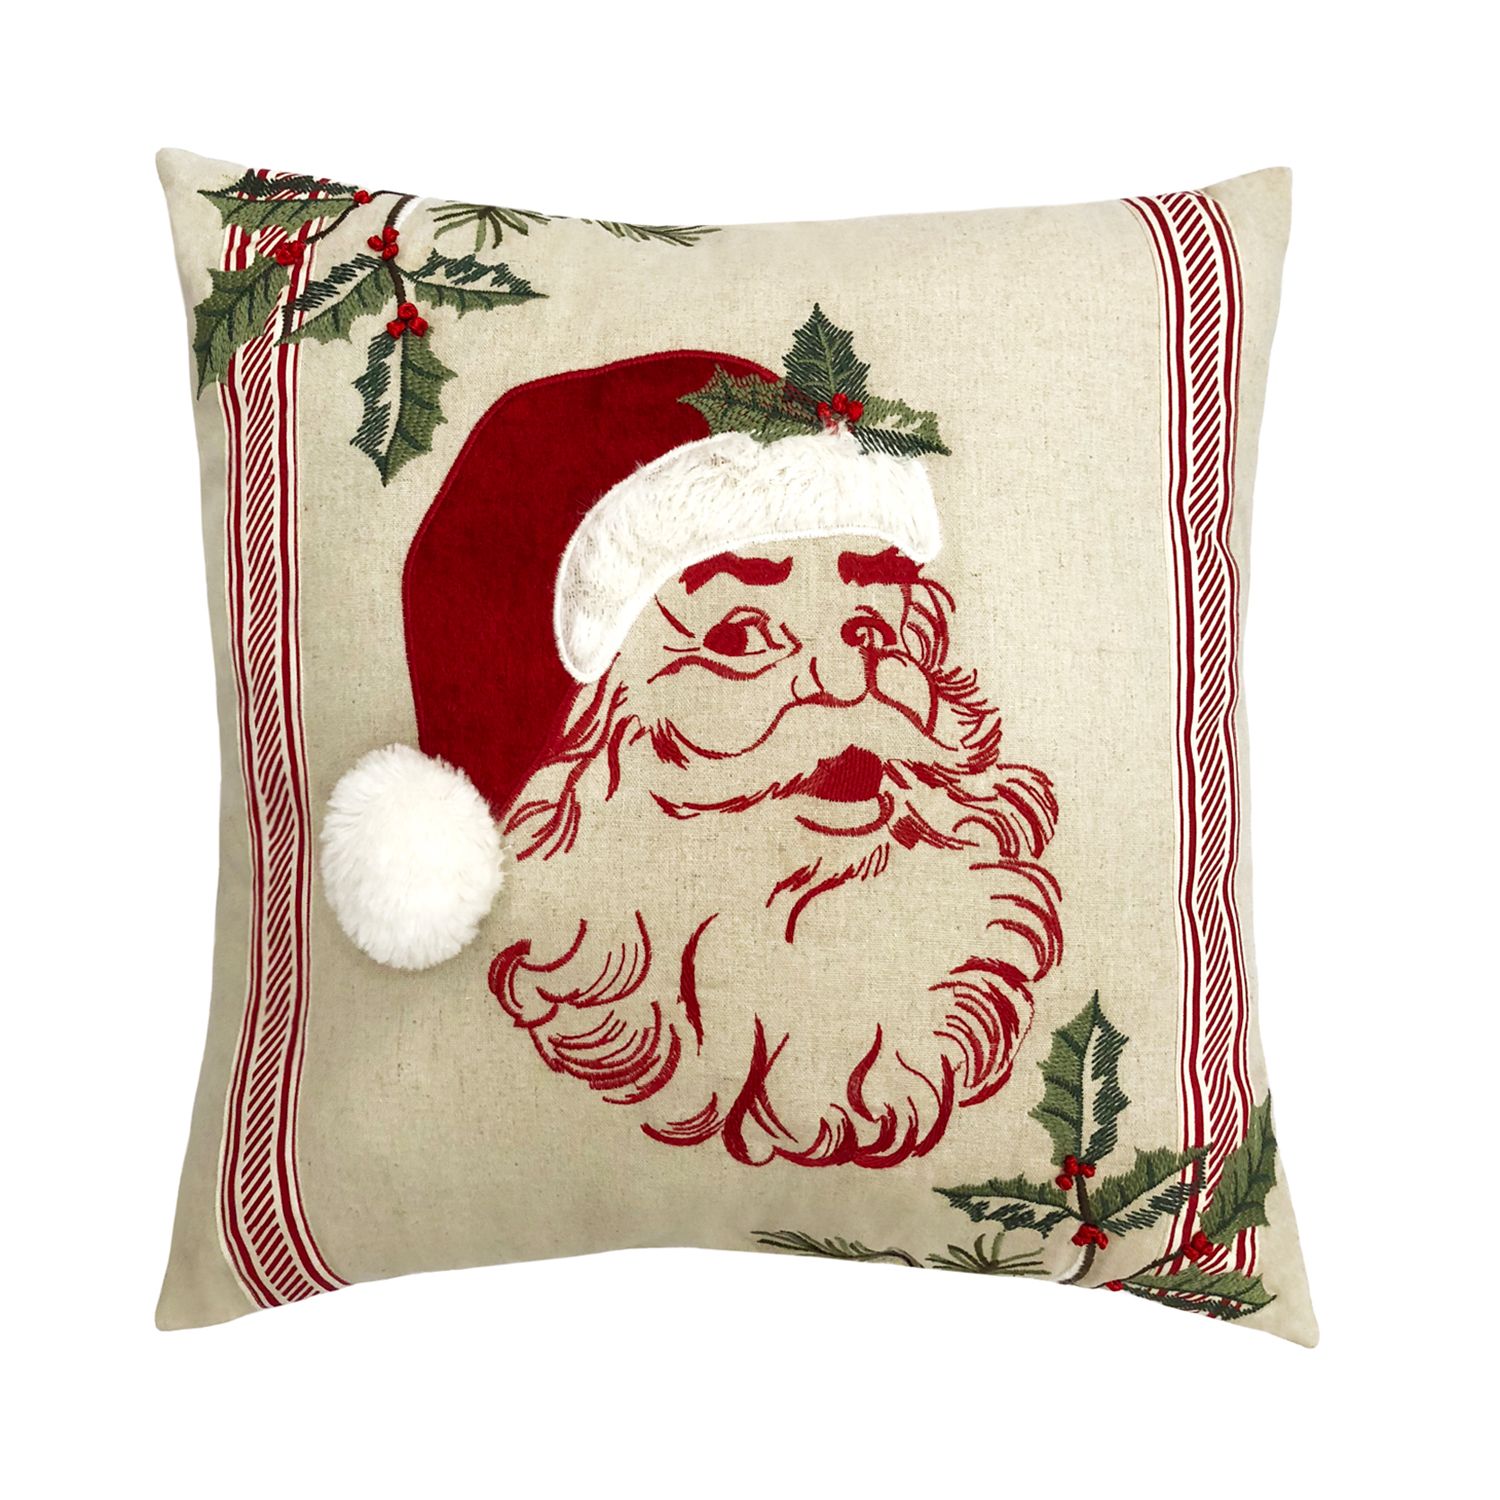 christmas pillows at kohl's